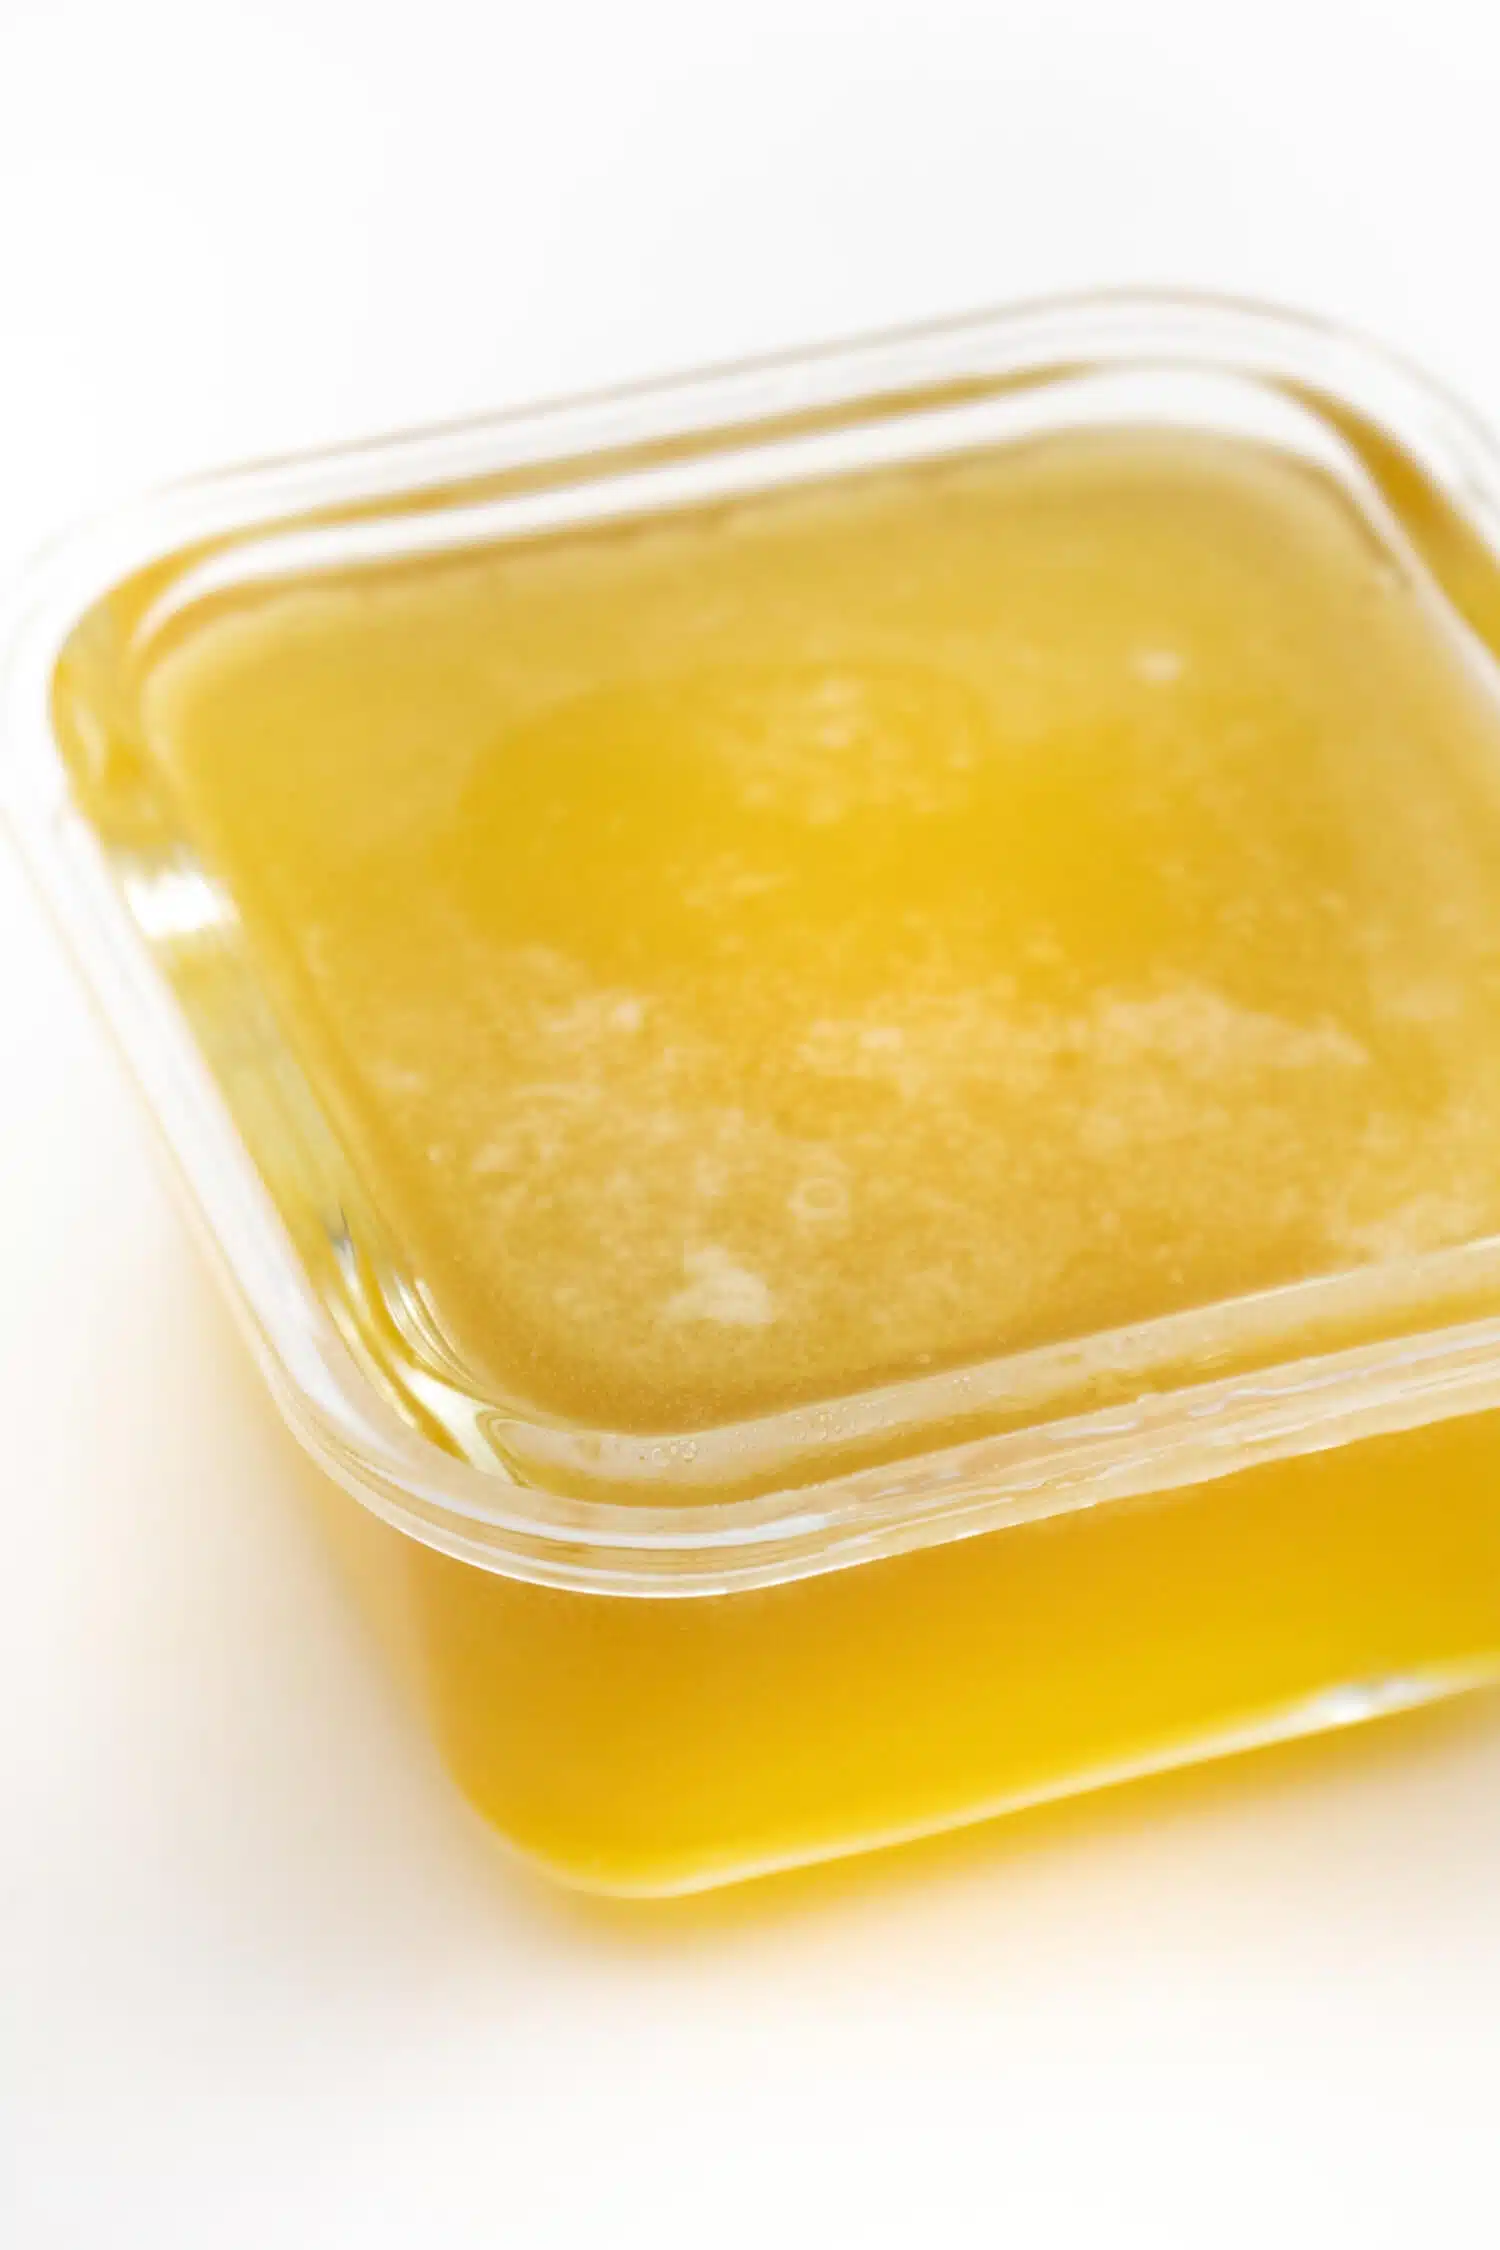 Keto Honig ohne Zucker selber machen